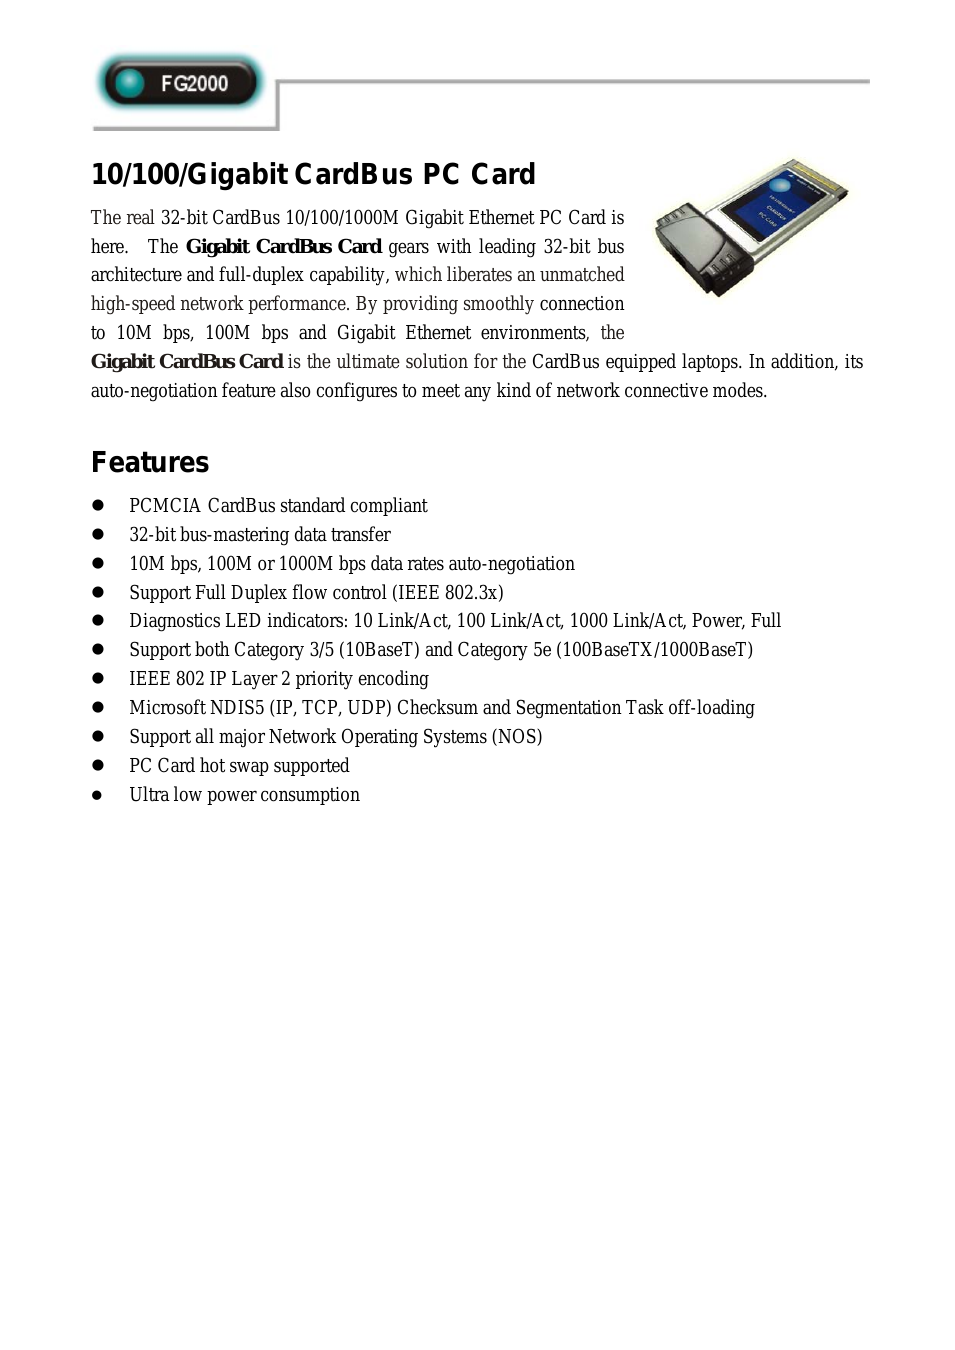 10/100/Gigabit CardBus PC Card FG2000